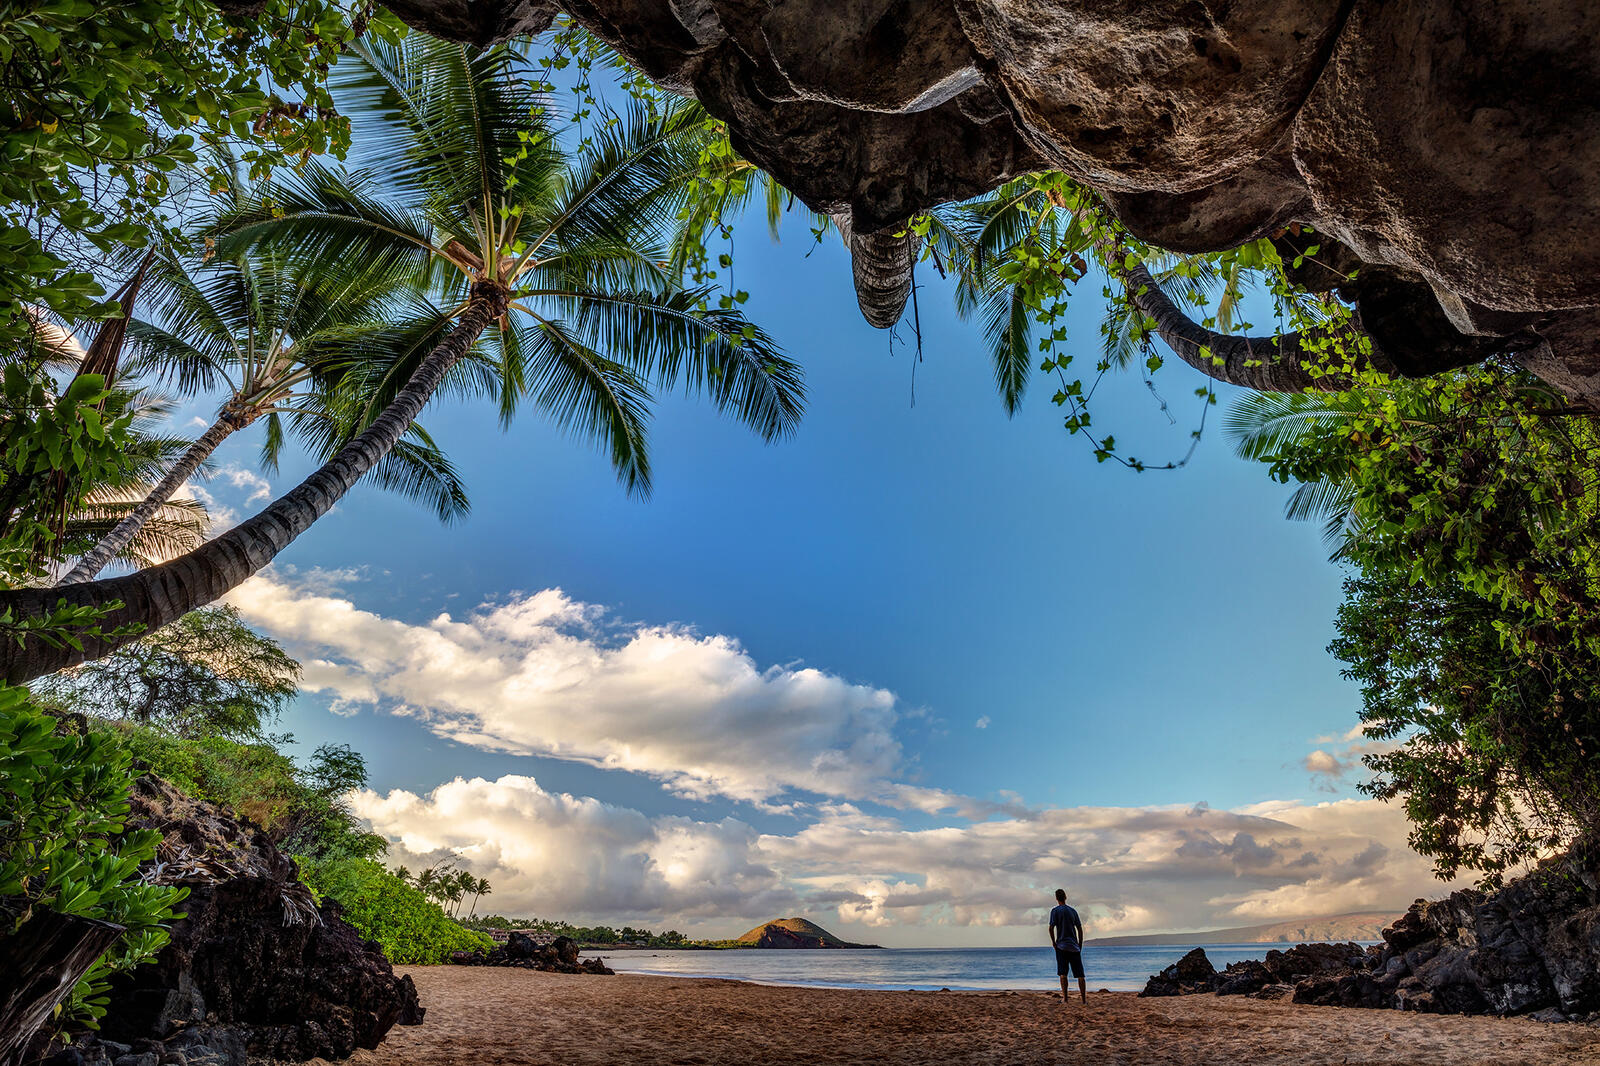 Обои Tropical Cave on the beach Maui Hawaii на рабочий стол